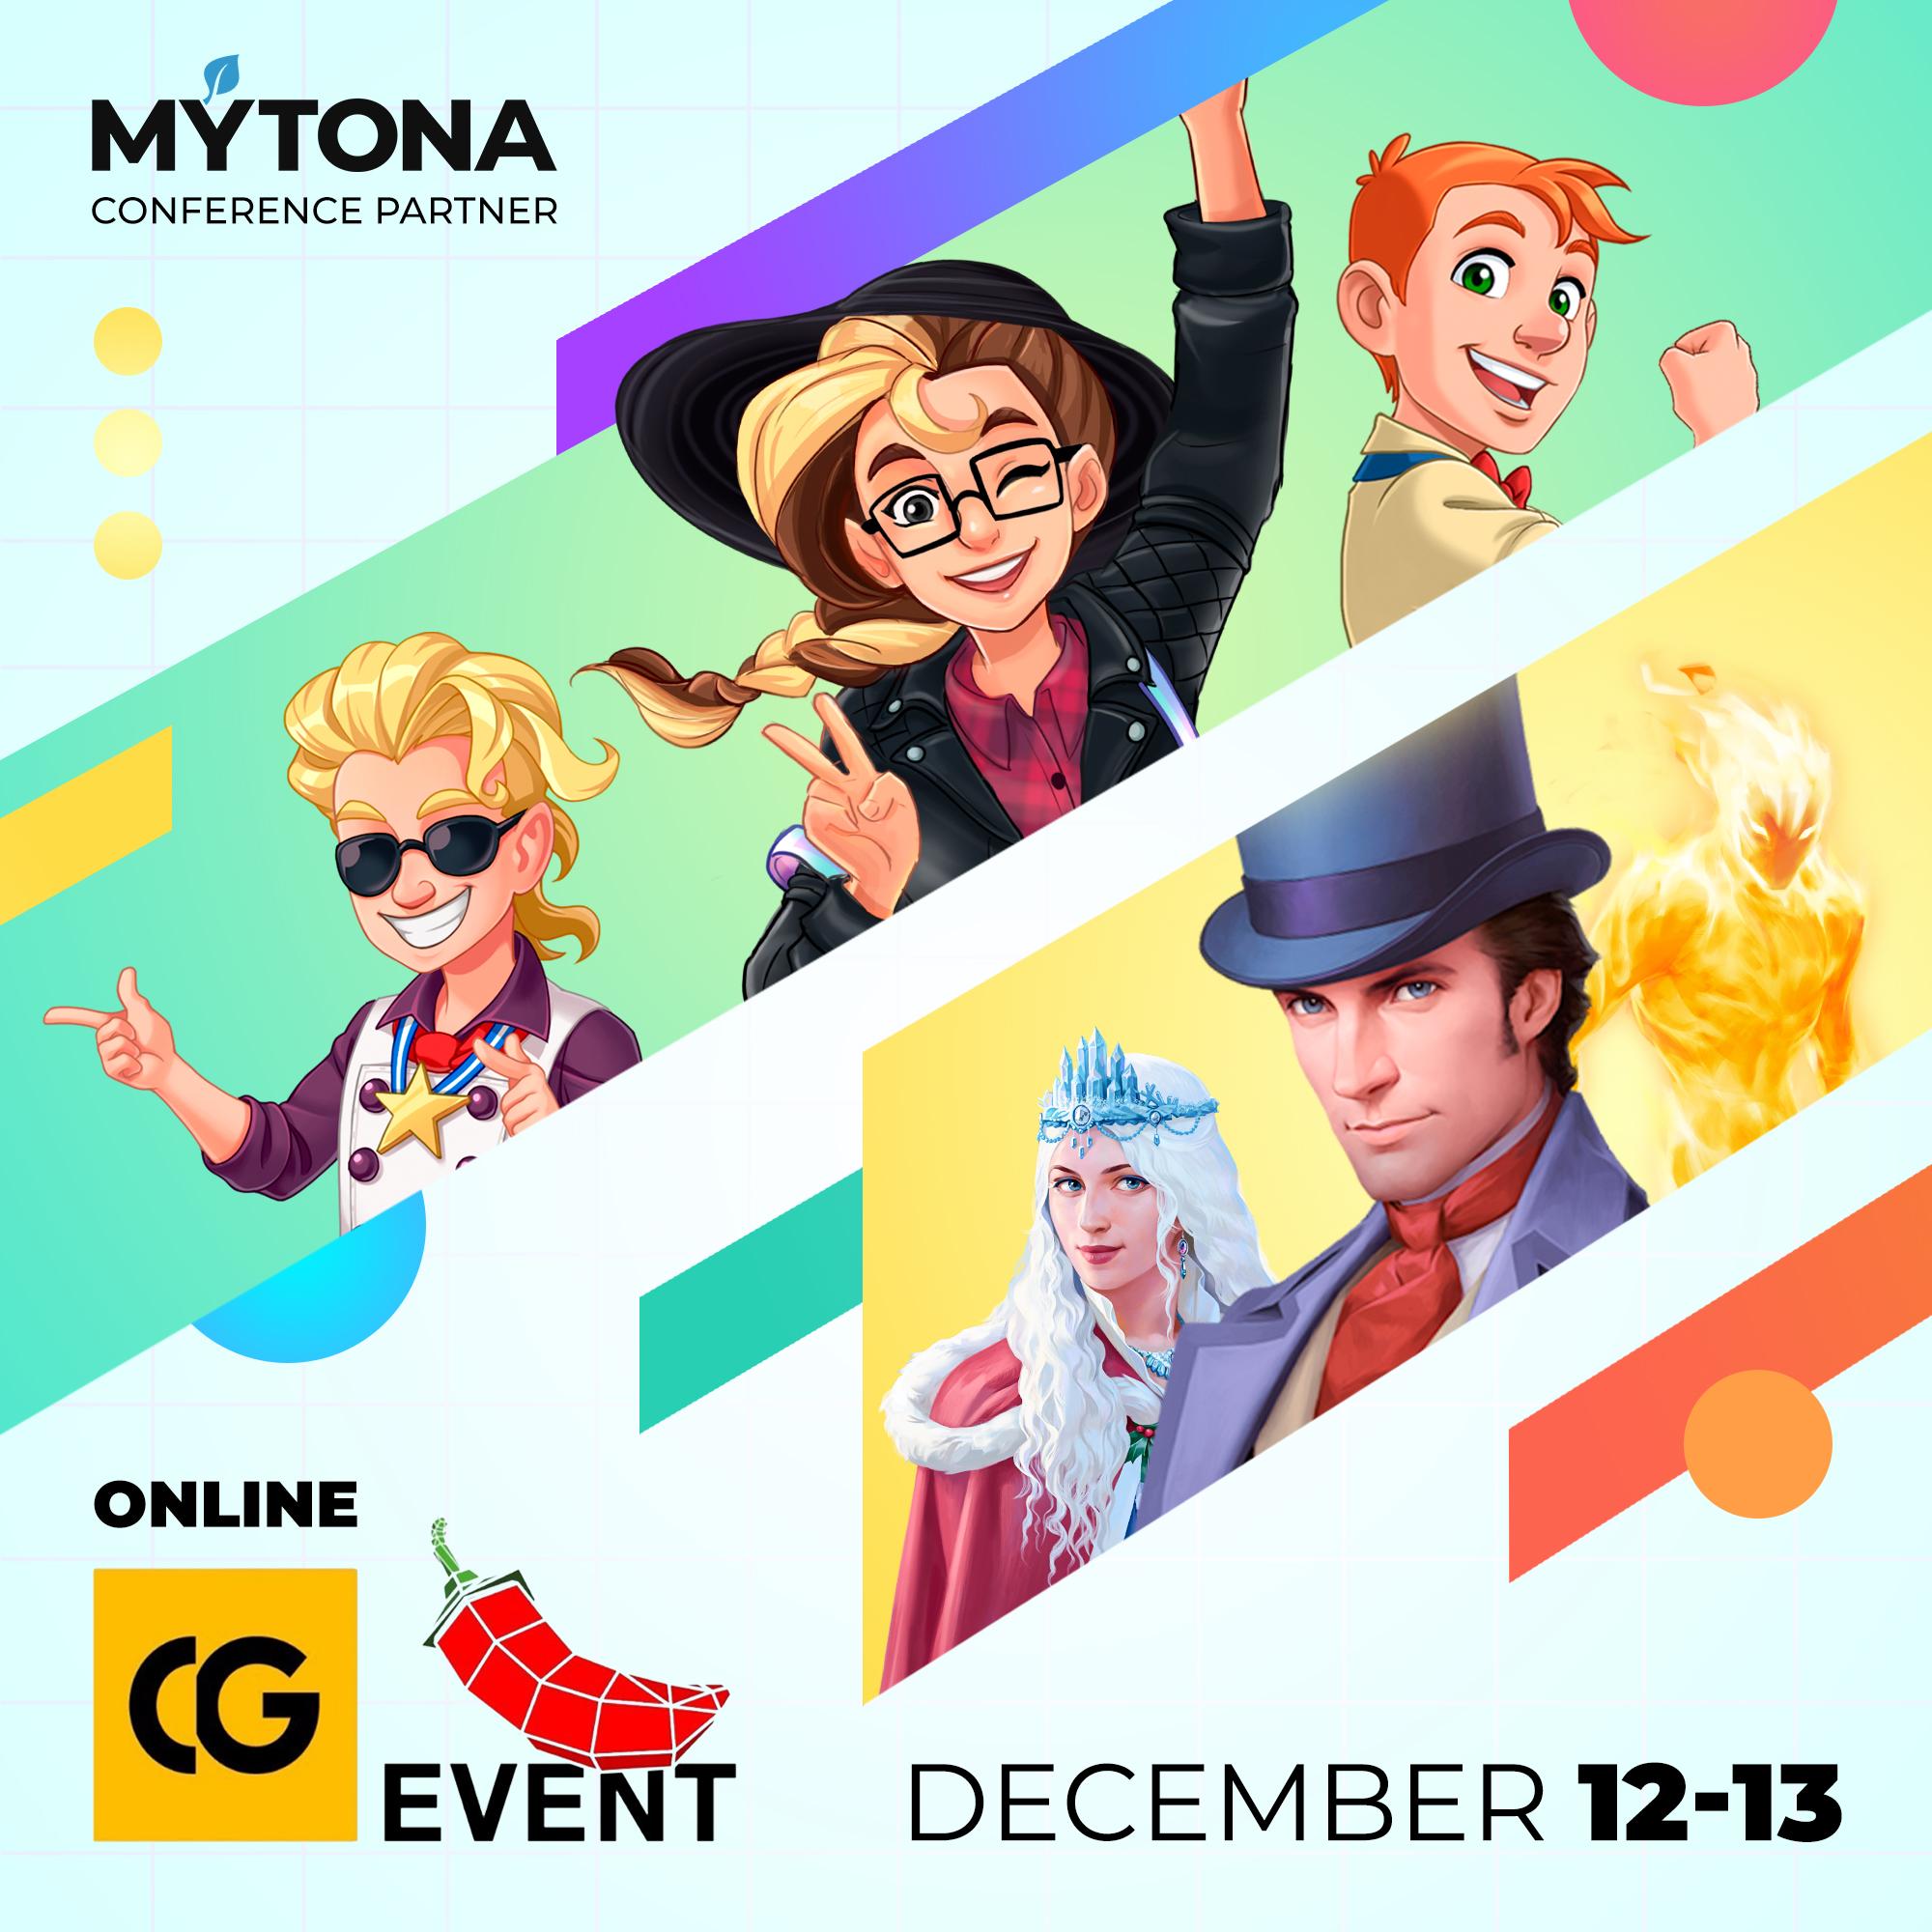 MYTONA at CG EVENT!